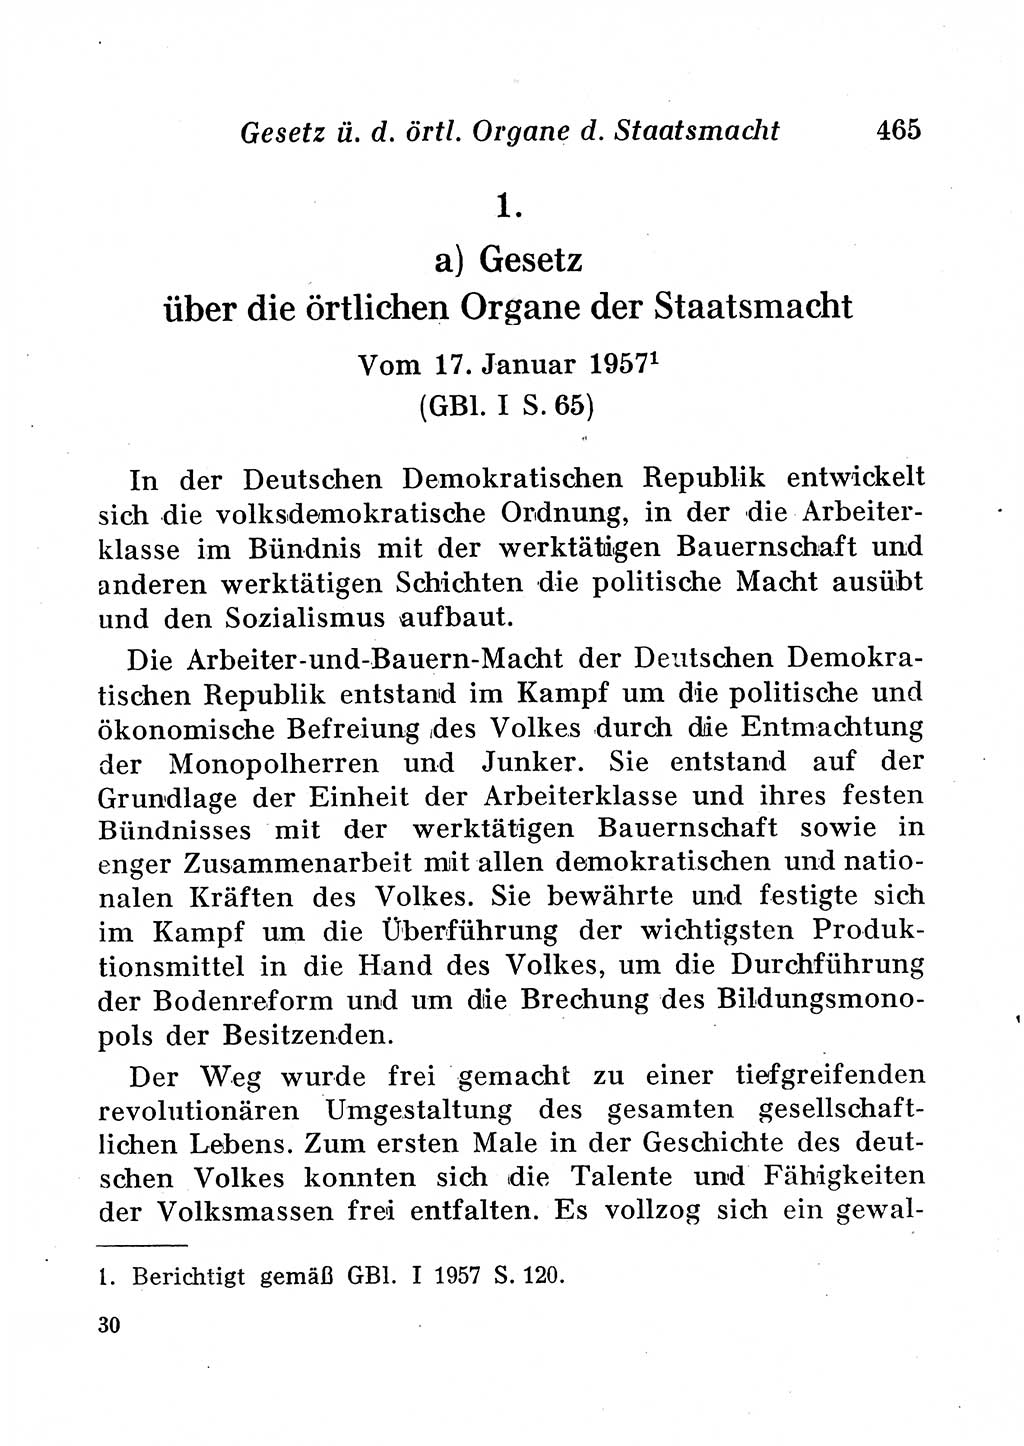 Staats- und verwaltungsrechtliche Gesetze der Deutschen Demokratischen Republik (DDR) 1958, Seite 465 (StVerwR Ges. DDR 1958, S. 465)